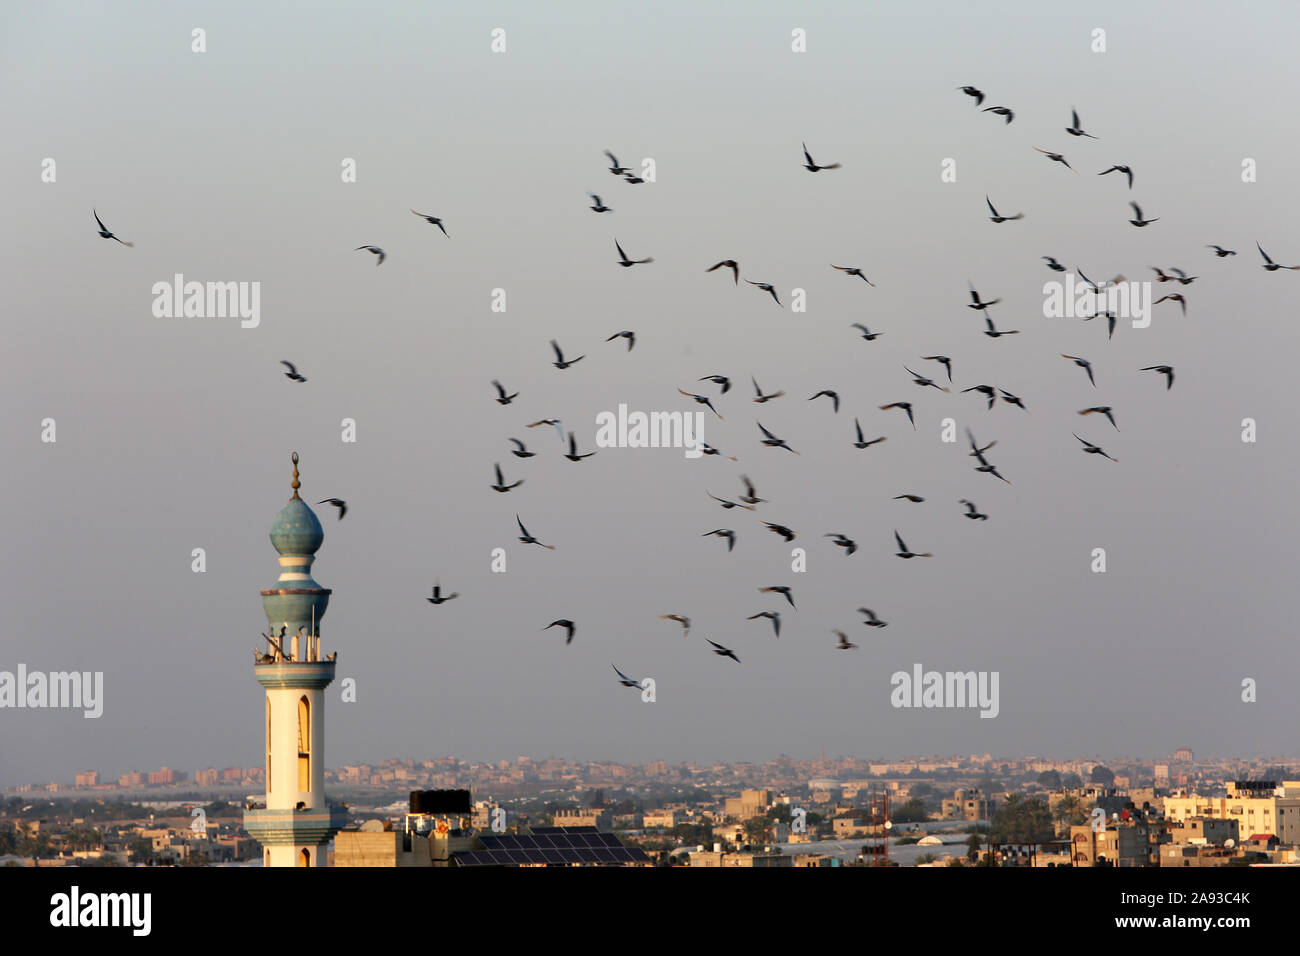 Piccioni che volano intorno al minareto di una moschea a Rafah, nella striscia meridionale di Gaza. Foto Di Abed Rahim Khatib/Alamy Foto Stock